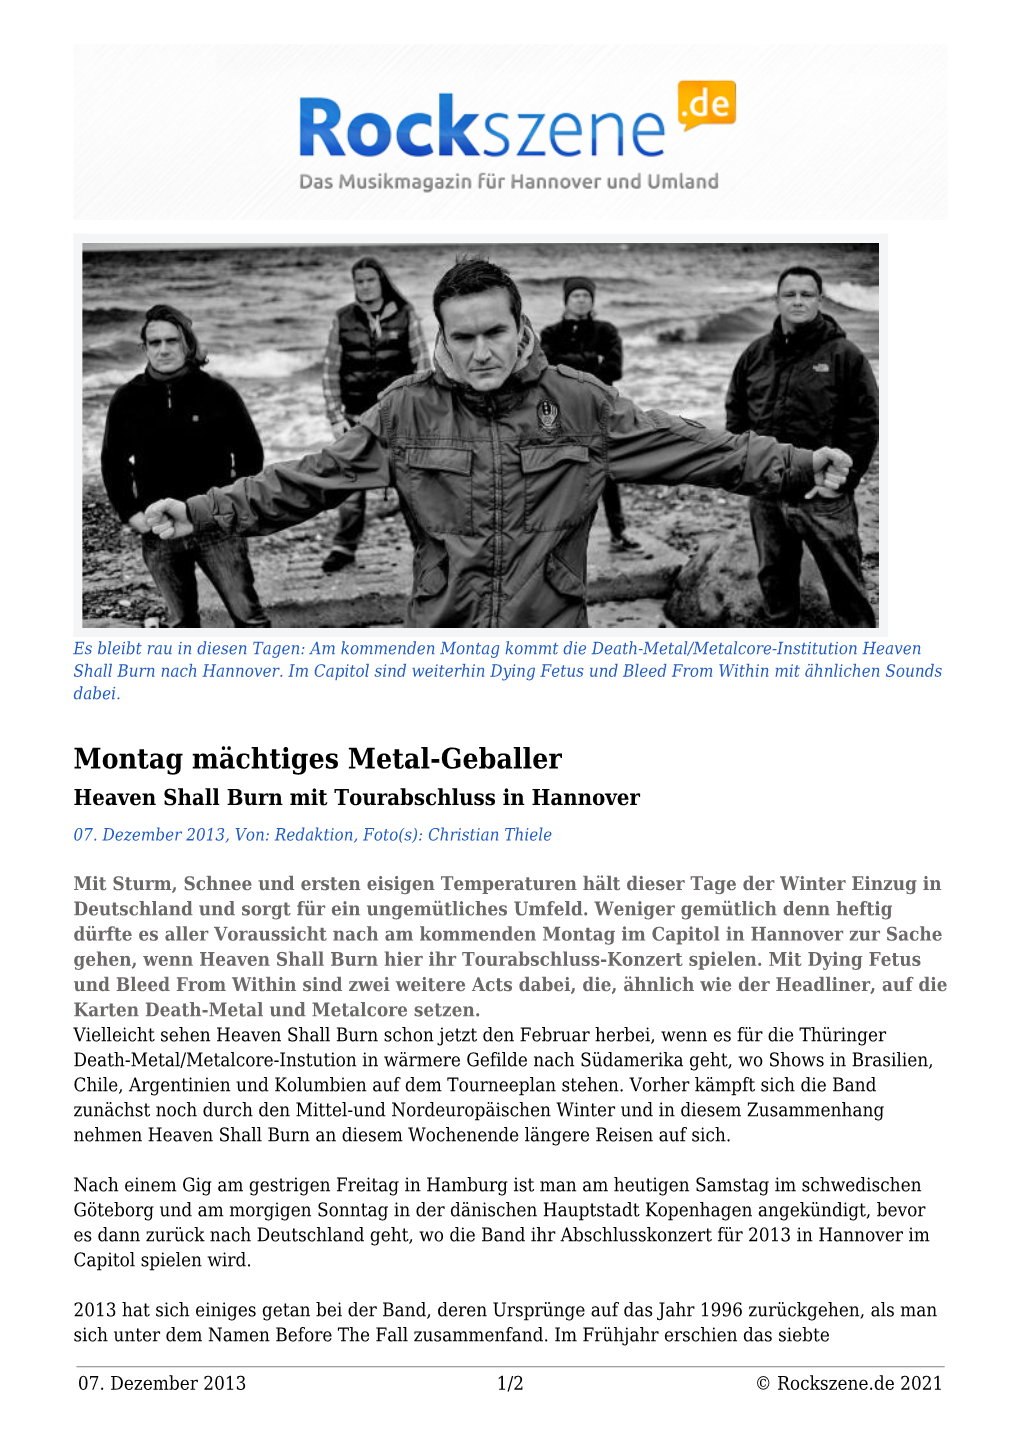 Montag Mächtiges Metal-Geballer Heaven Shall Burn Mit Tourabschluss in Hannover